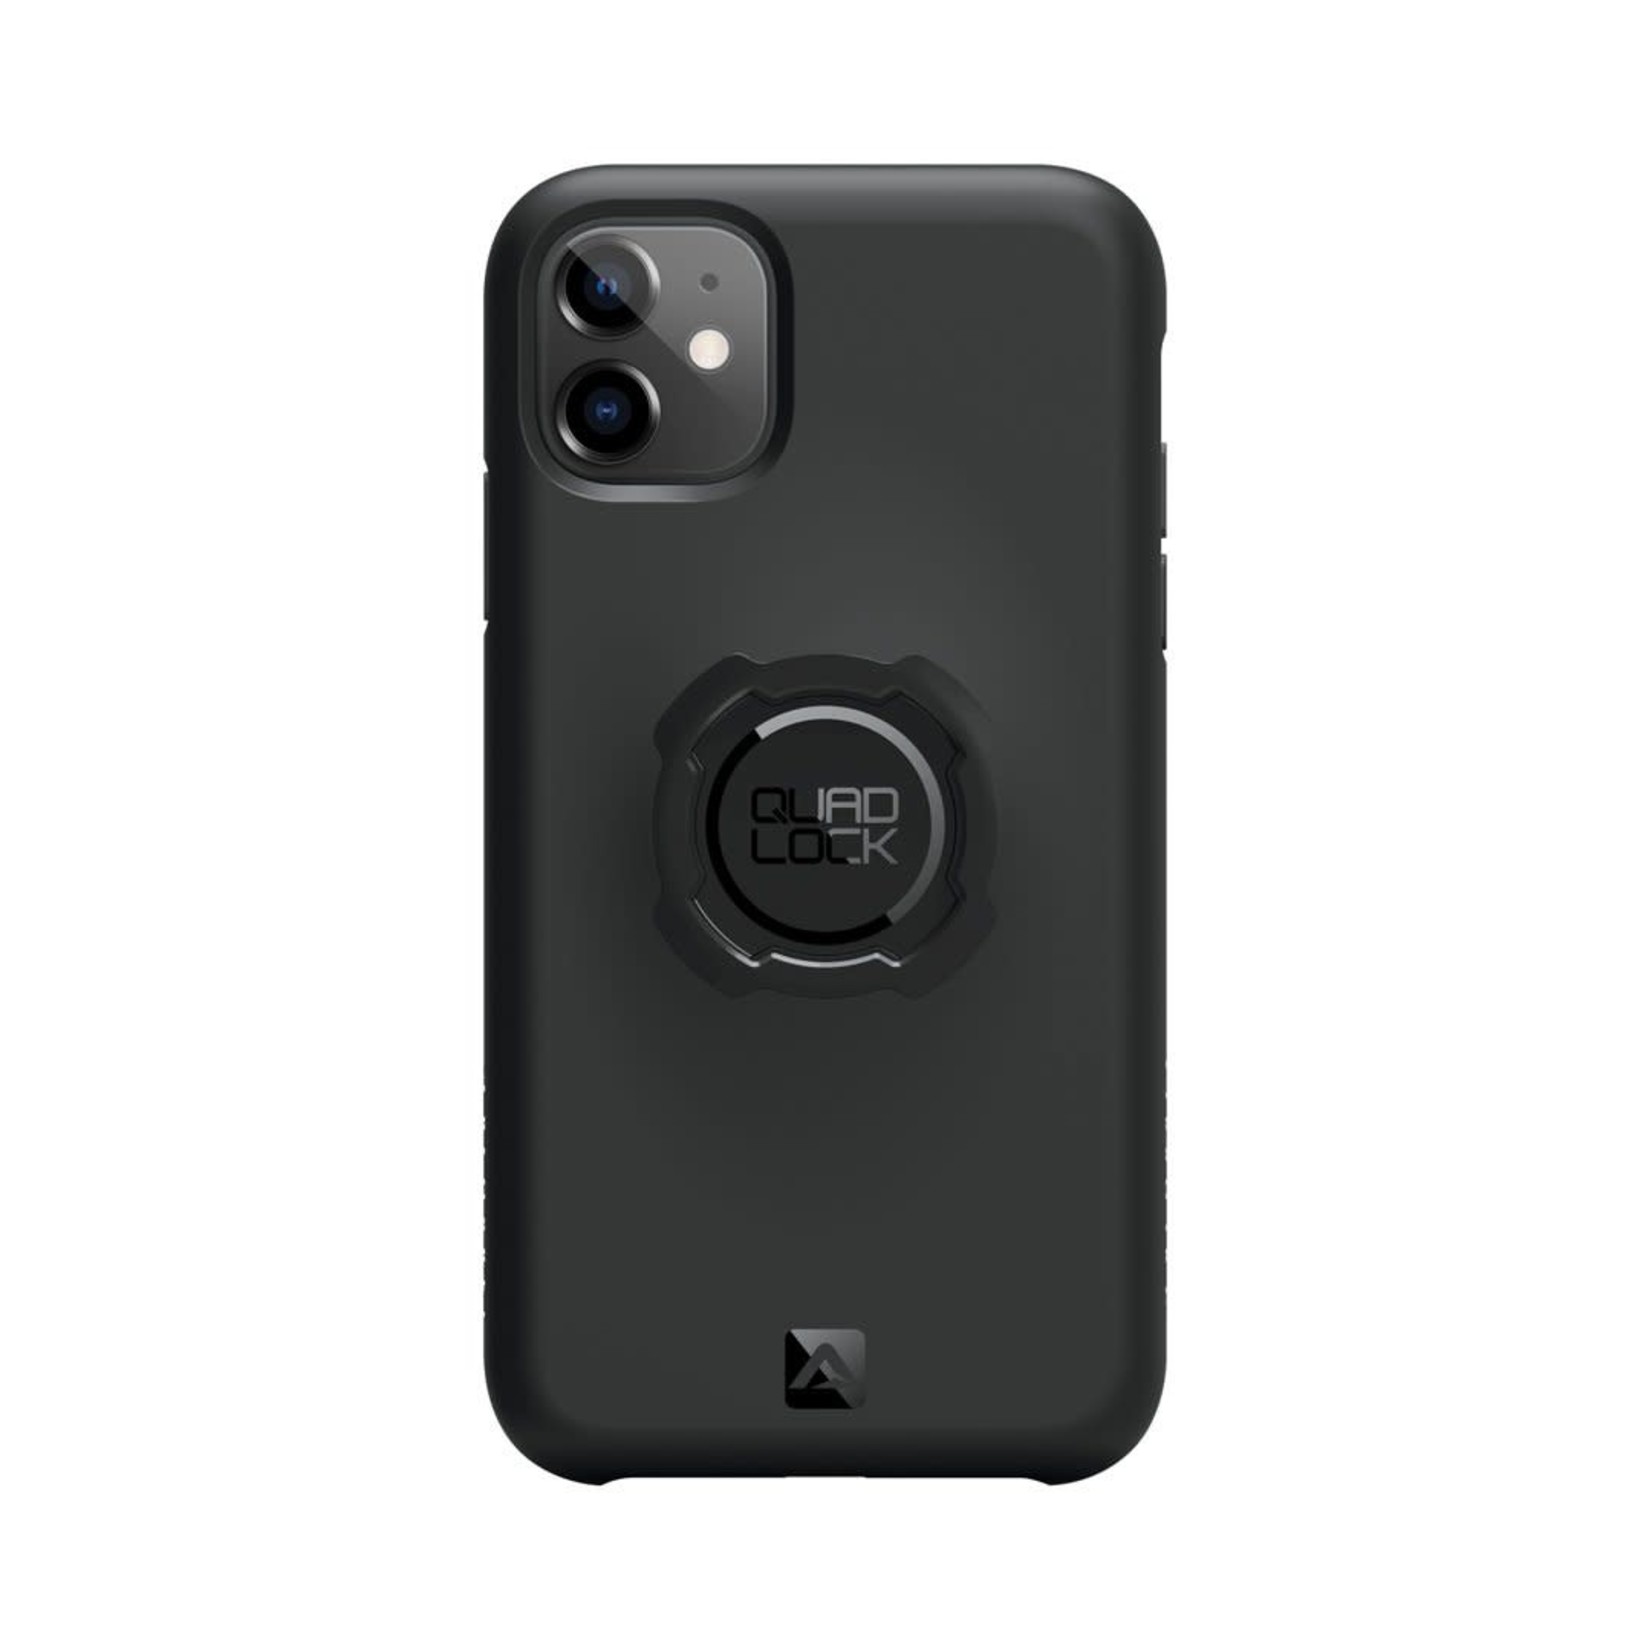 Quadlock Quad Lock Iphone 11 case